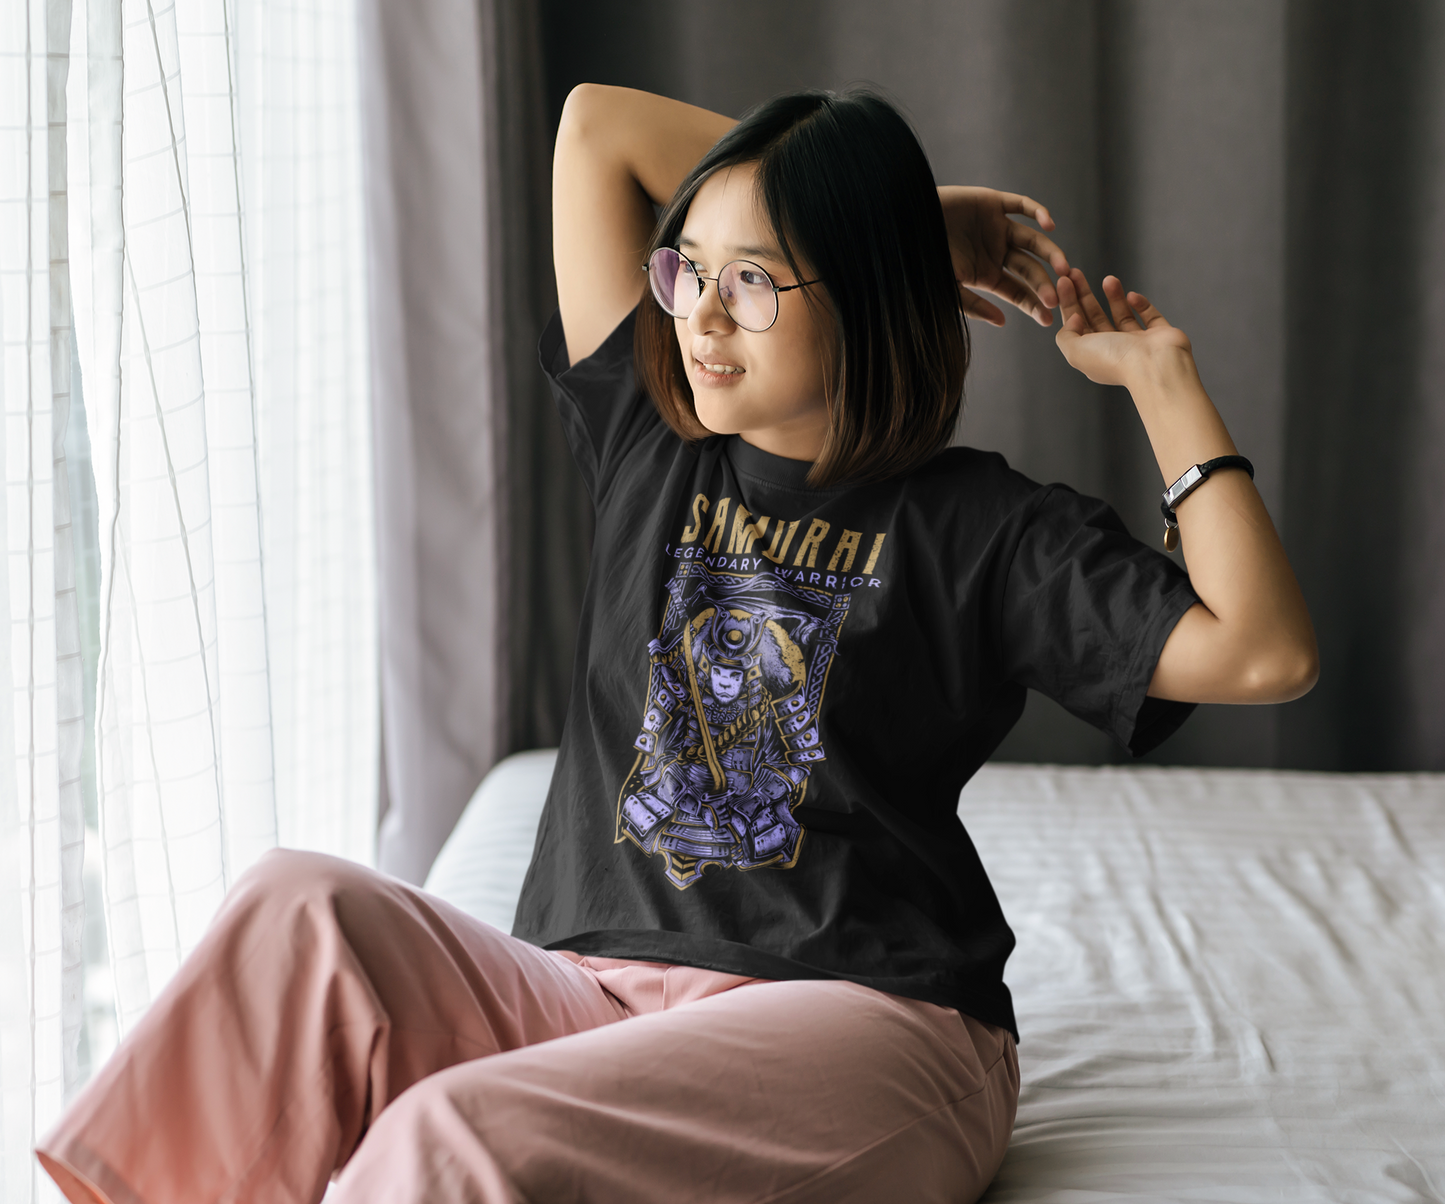 Samurai Black Unisex Over-sized T-shirt